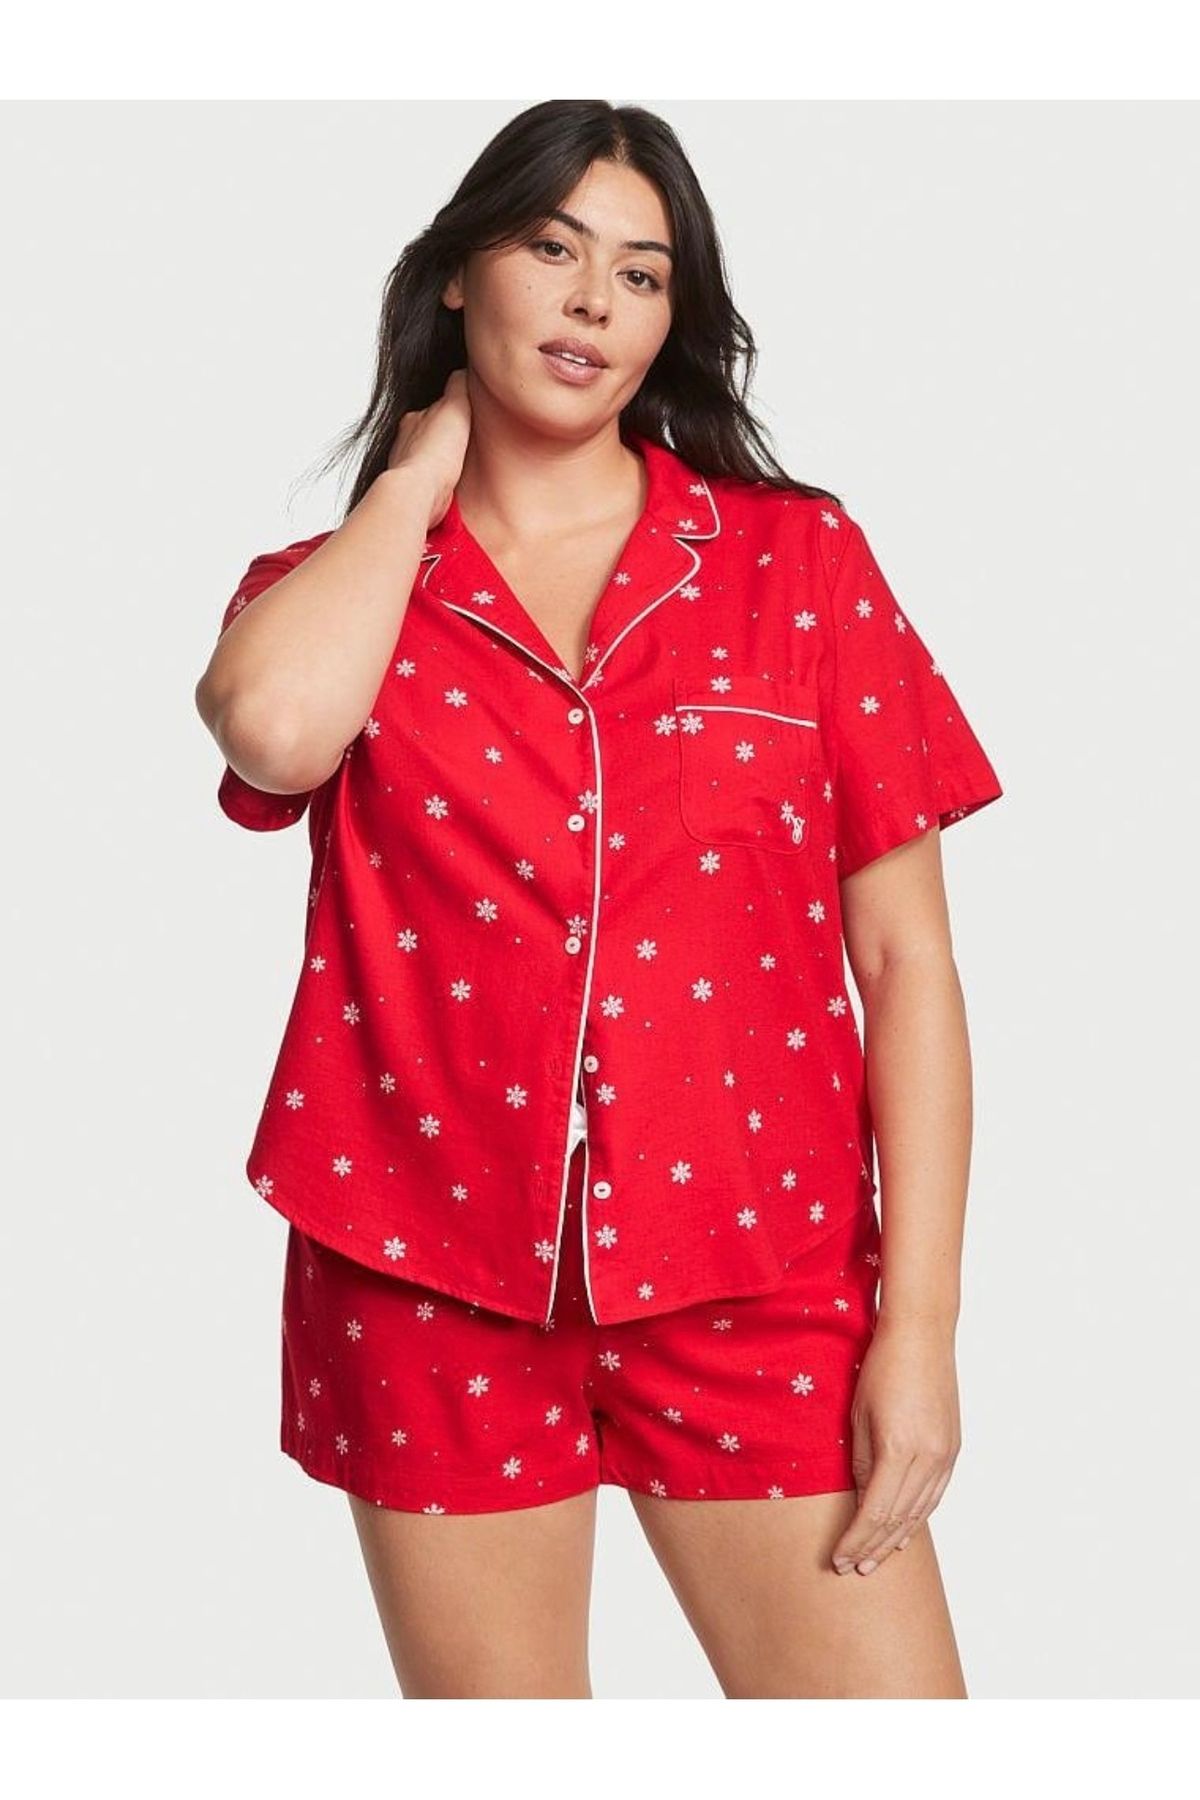 Victoria's Secret Flannel Şortlu Pijama Takımı